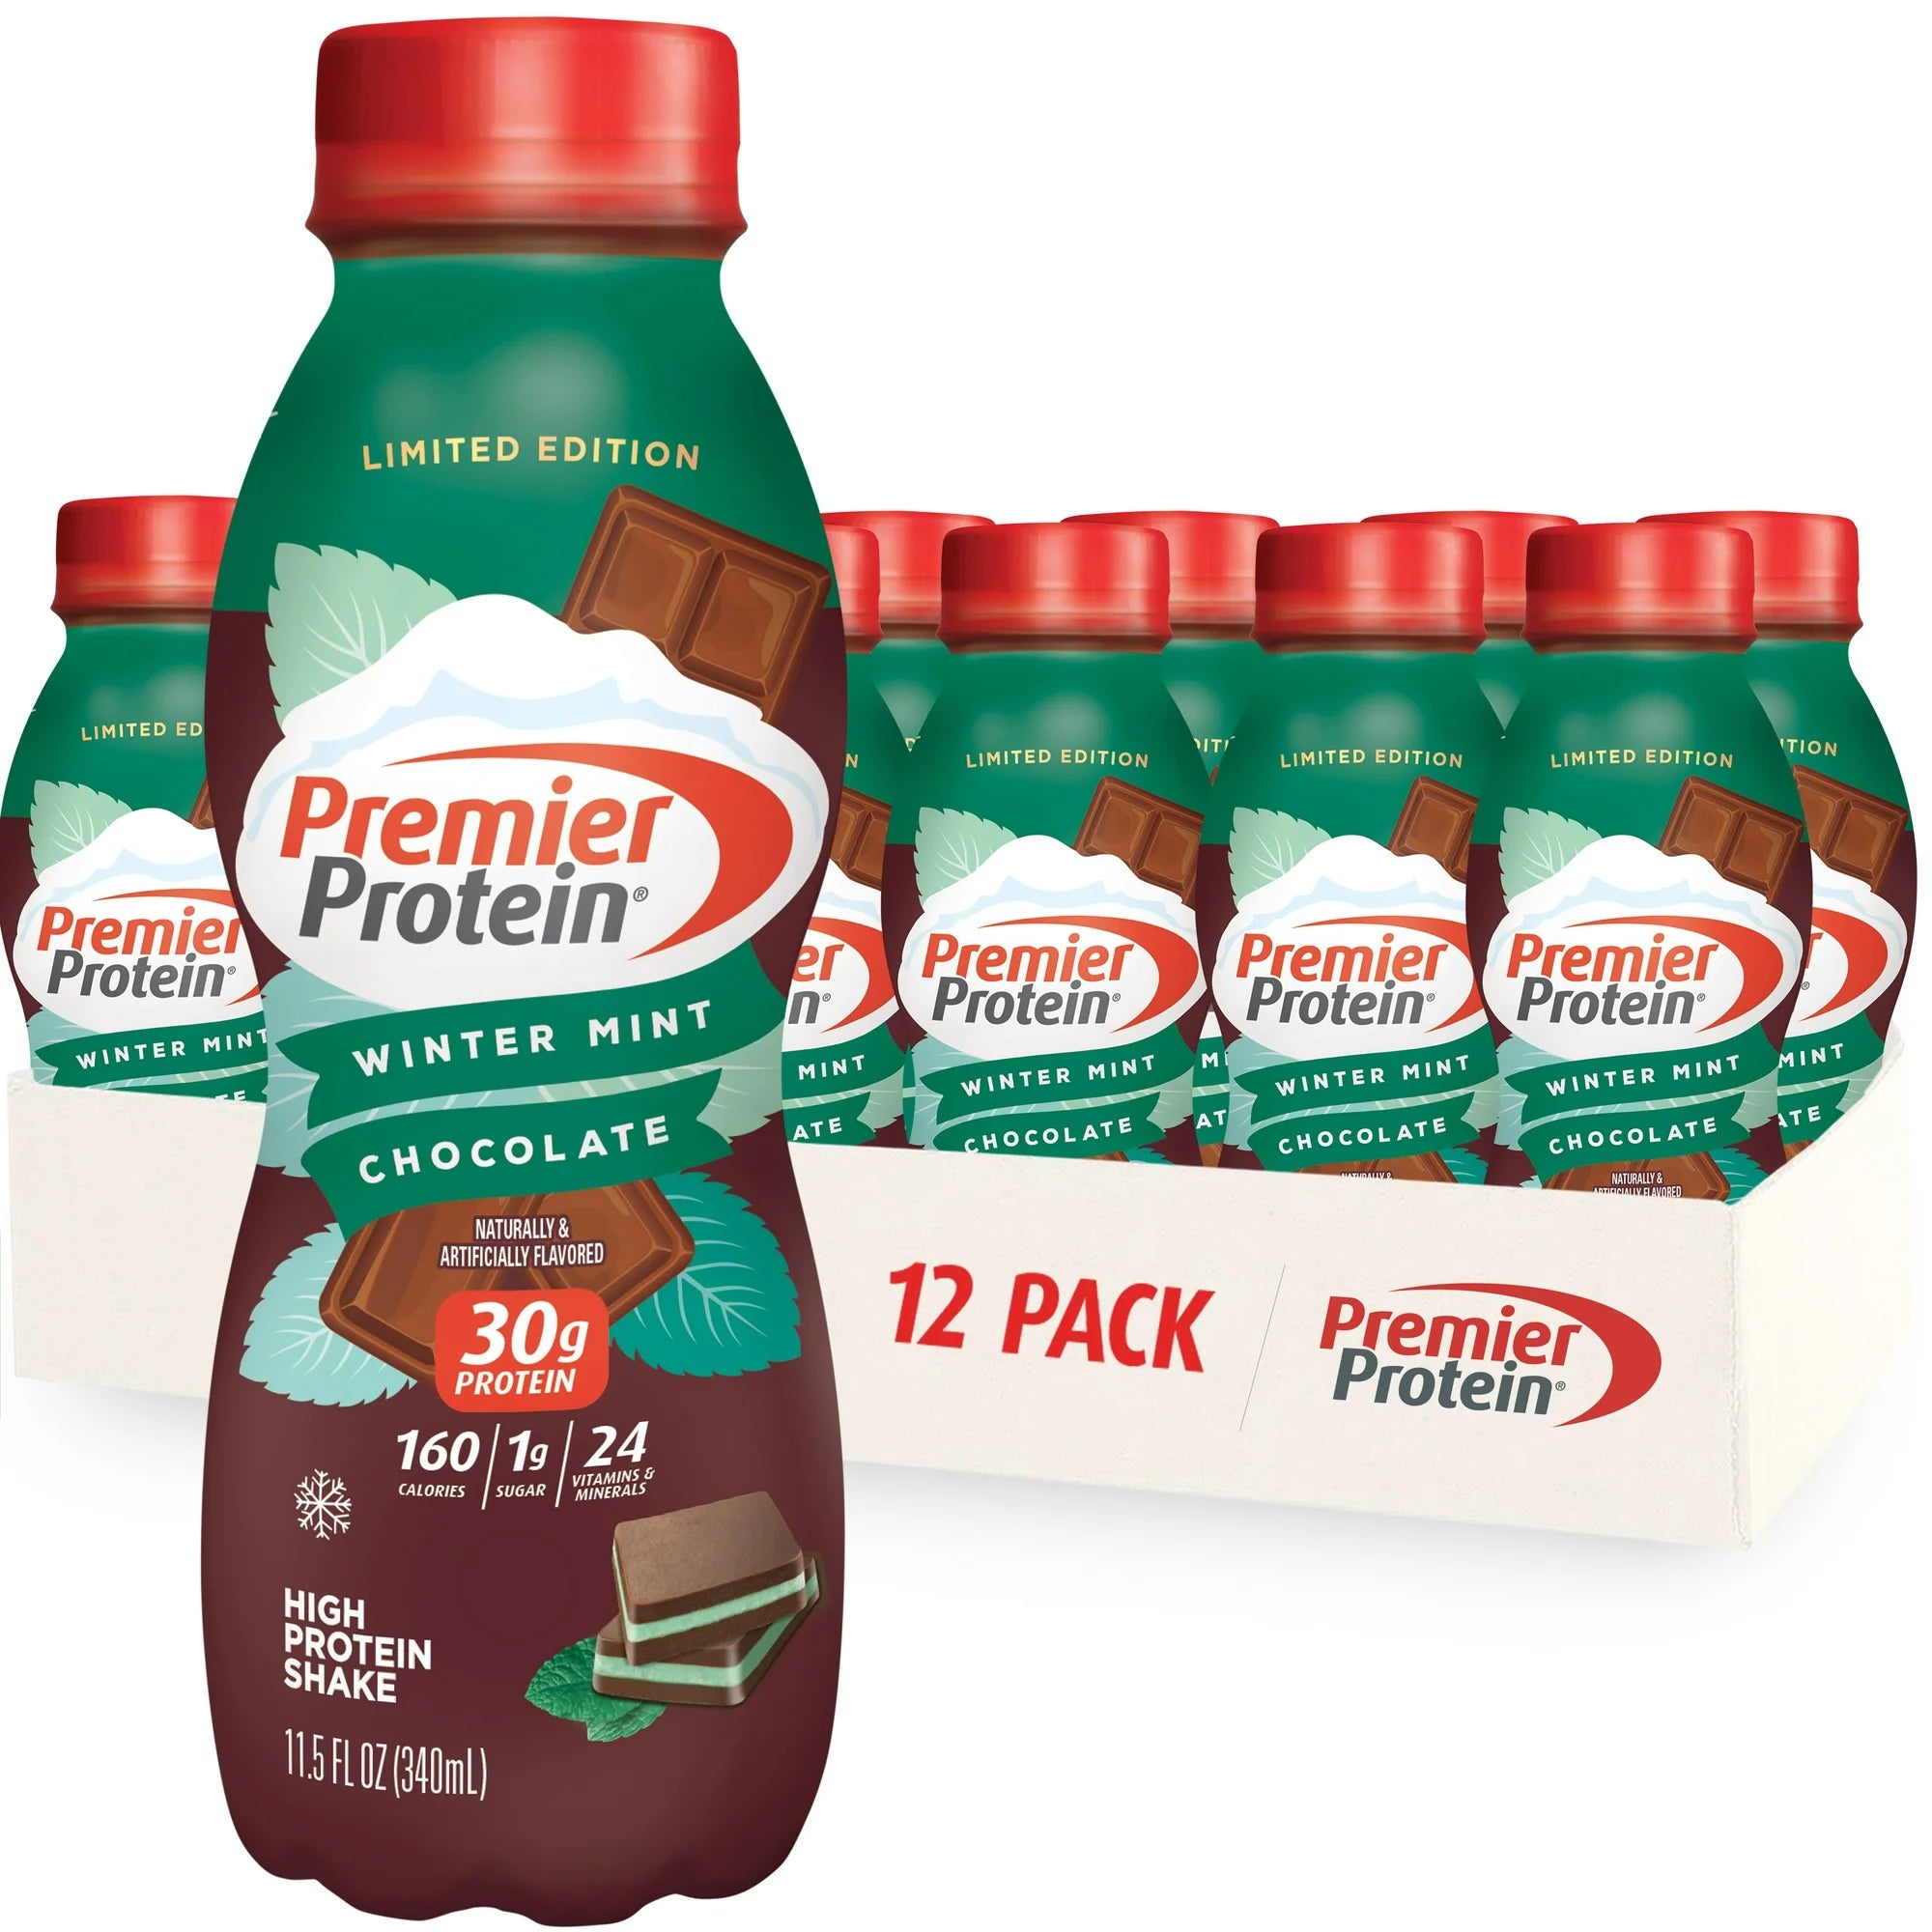 Premier Protein Shake, Vanilla, 30g Protein, 11 fl oz, 12 Ct